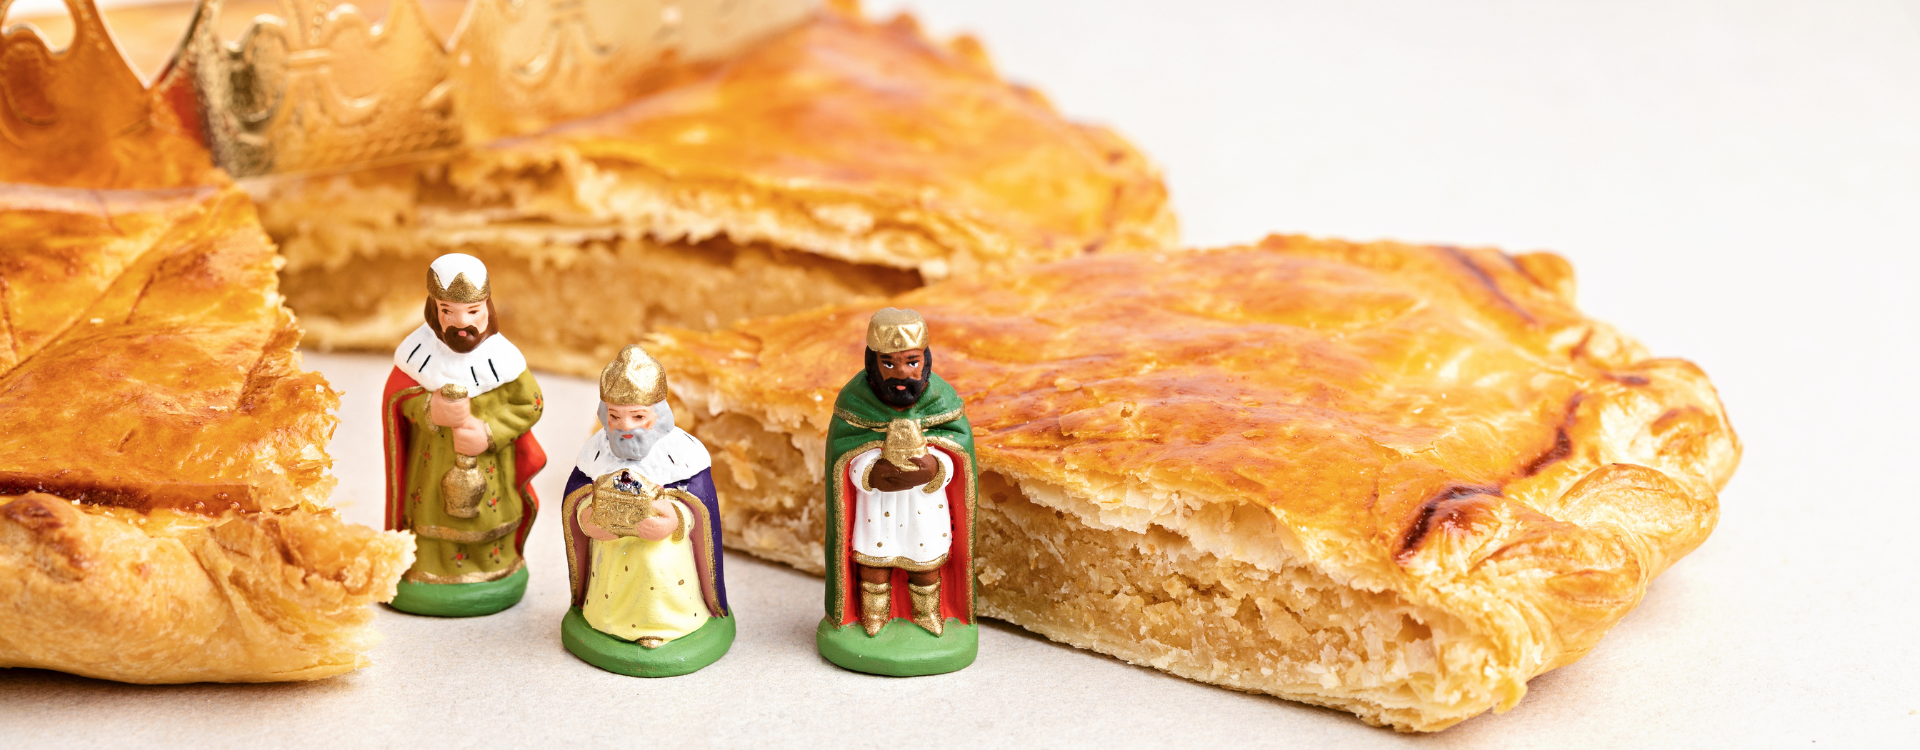 Épiphanie: on fête les rois avec une recette de galette spéciale